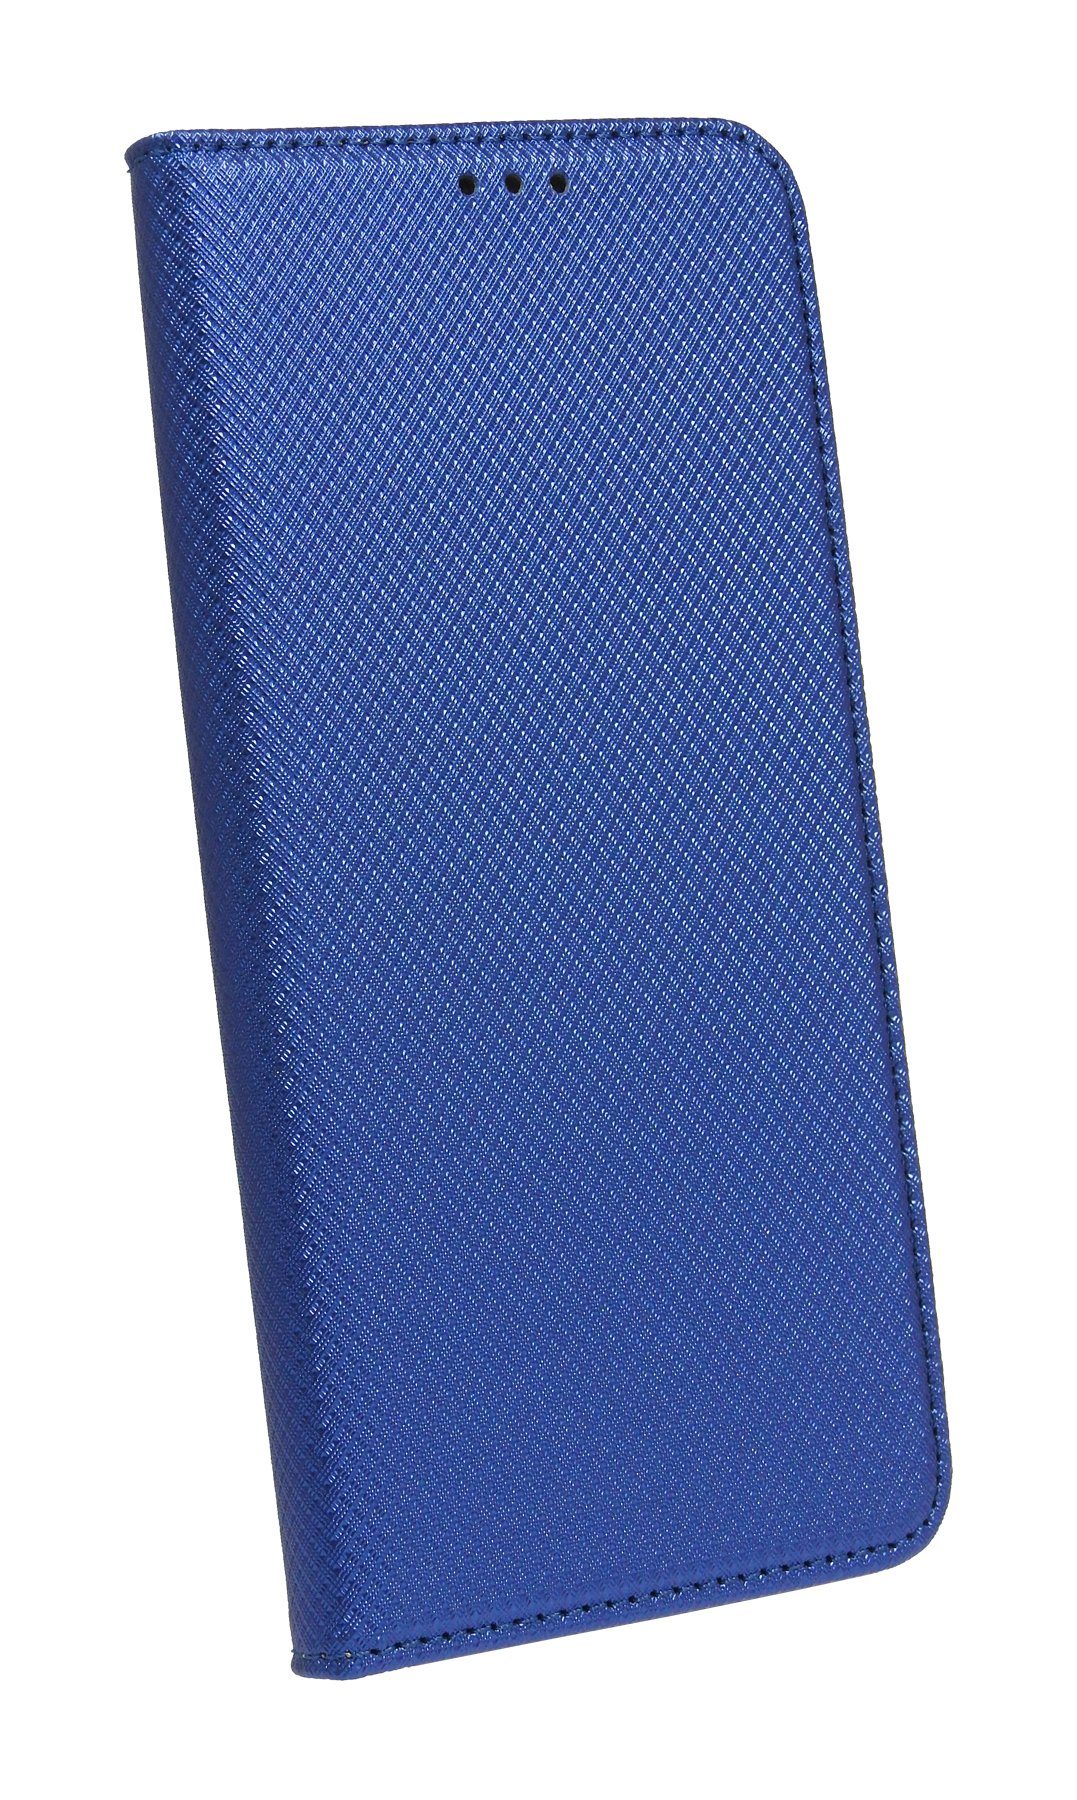 cofi1453 Smartphone-Hülle cofi1453 Buch Tasche "Smart" für XIAOMI MI 10T LITE Handy Hülle Etui Brieftasche Schutzhülle mit Standfunktion, Kartenfach Schwarz